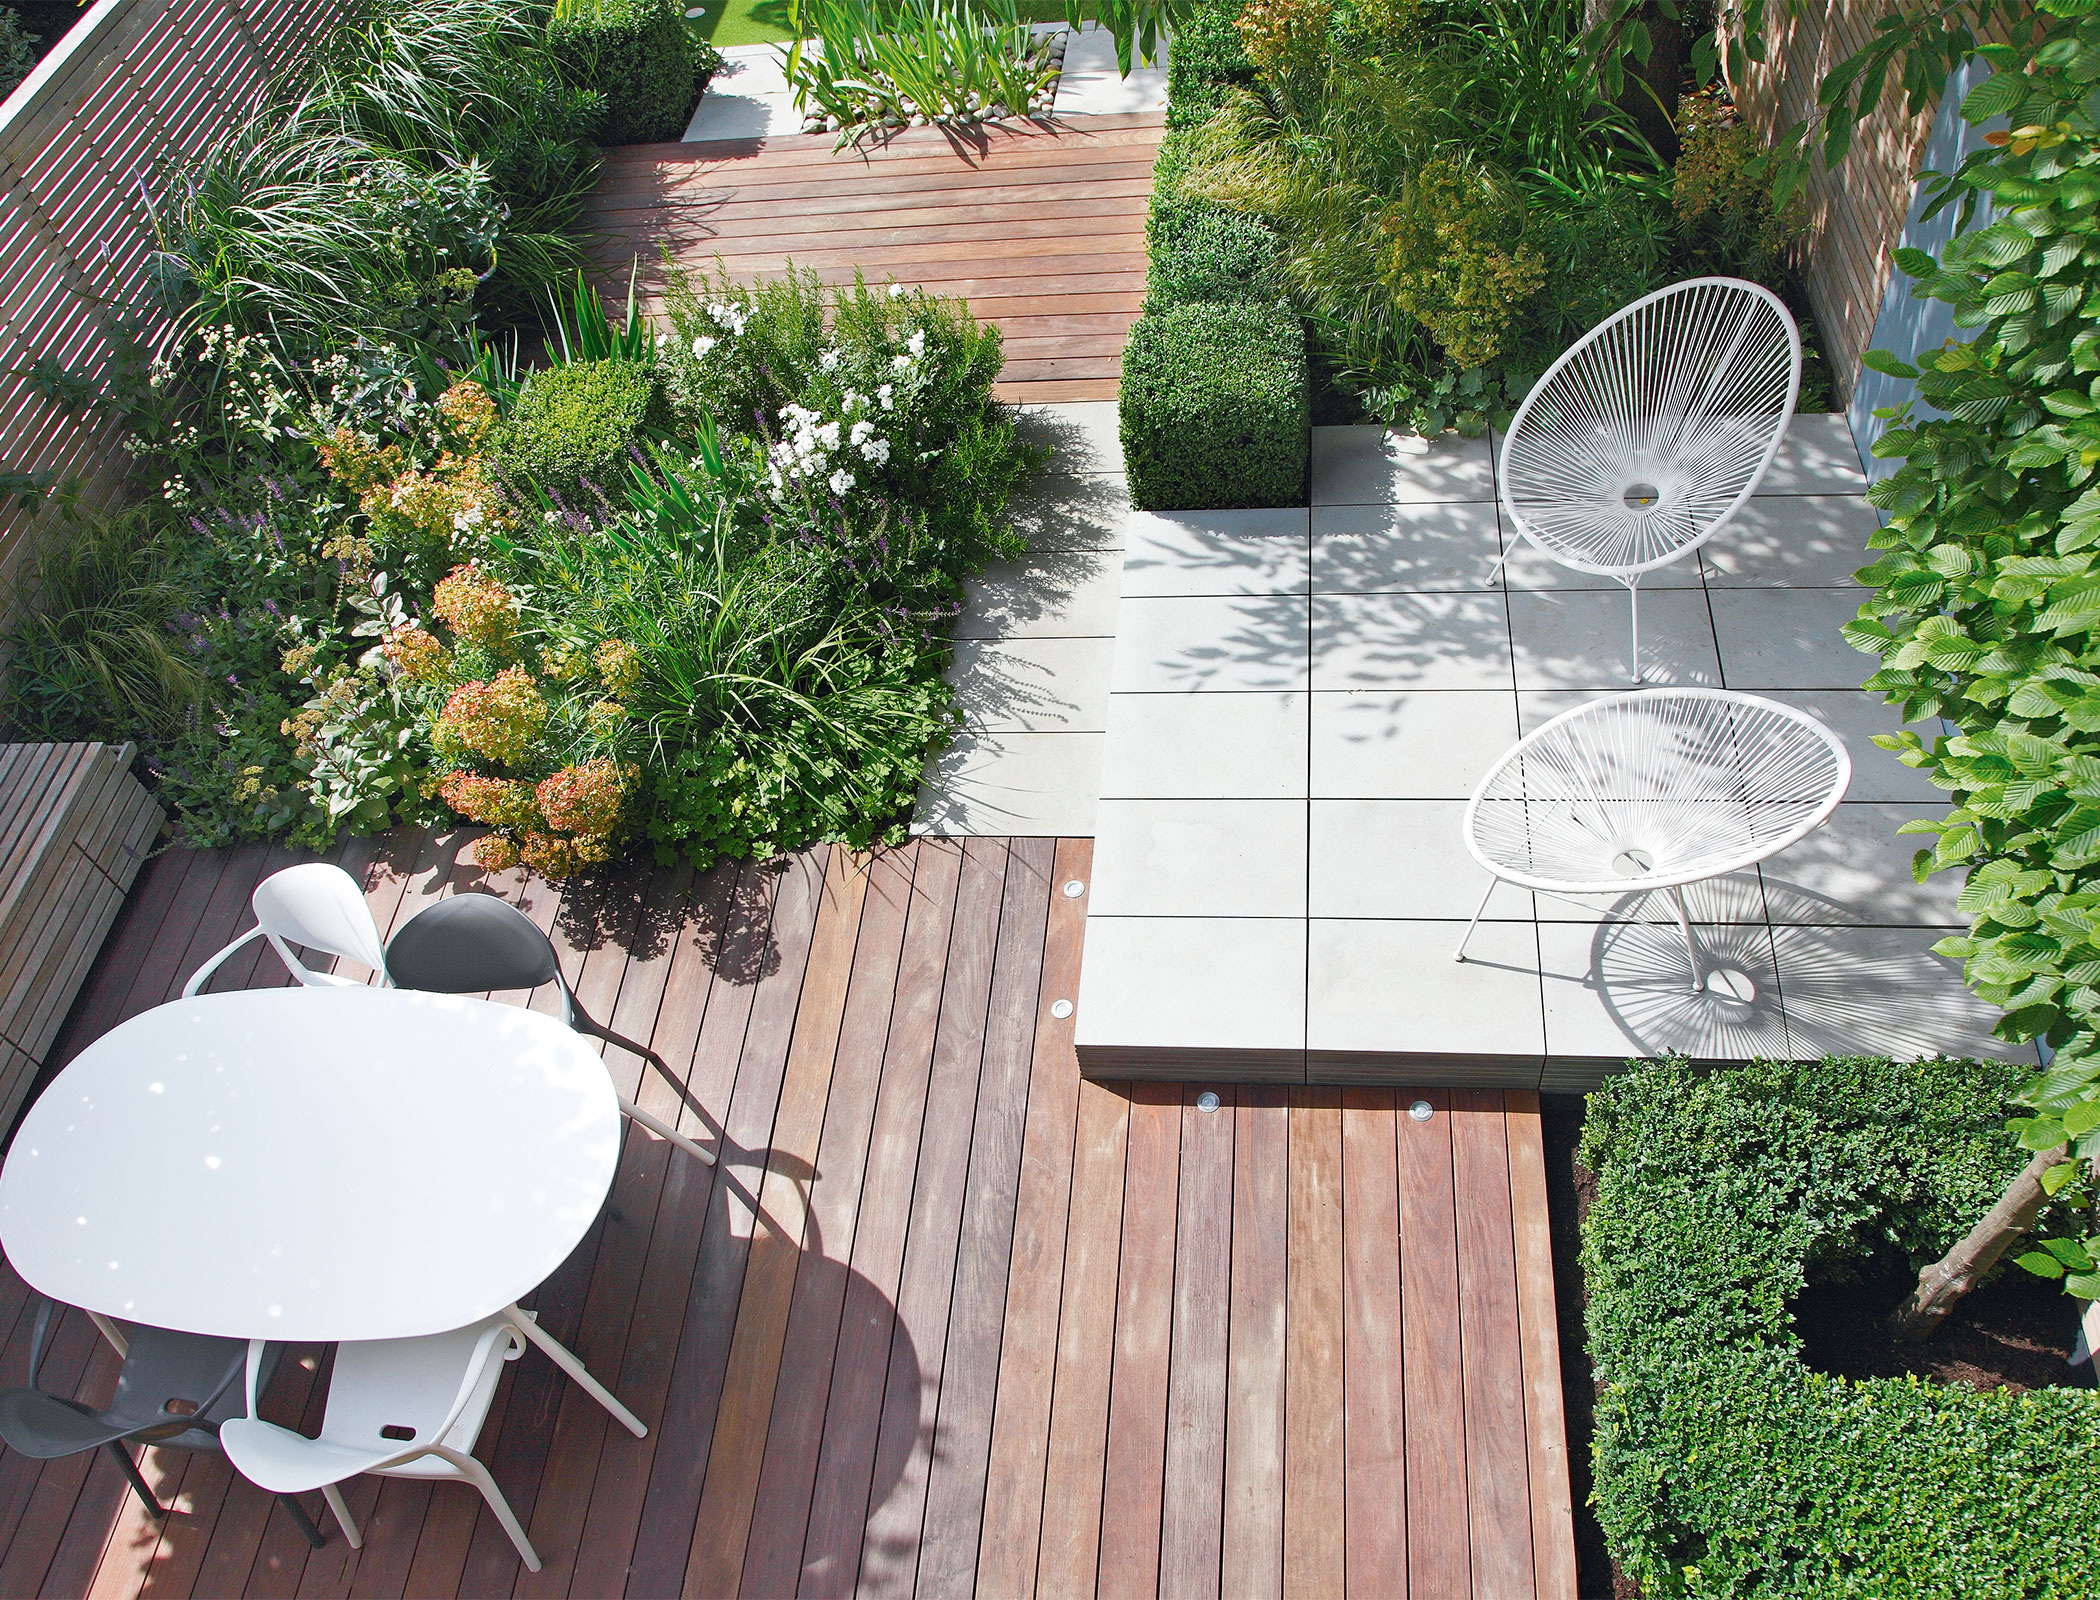 How To Design A Patio: Expert Advice On Patio Design | Homes & Gardens